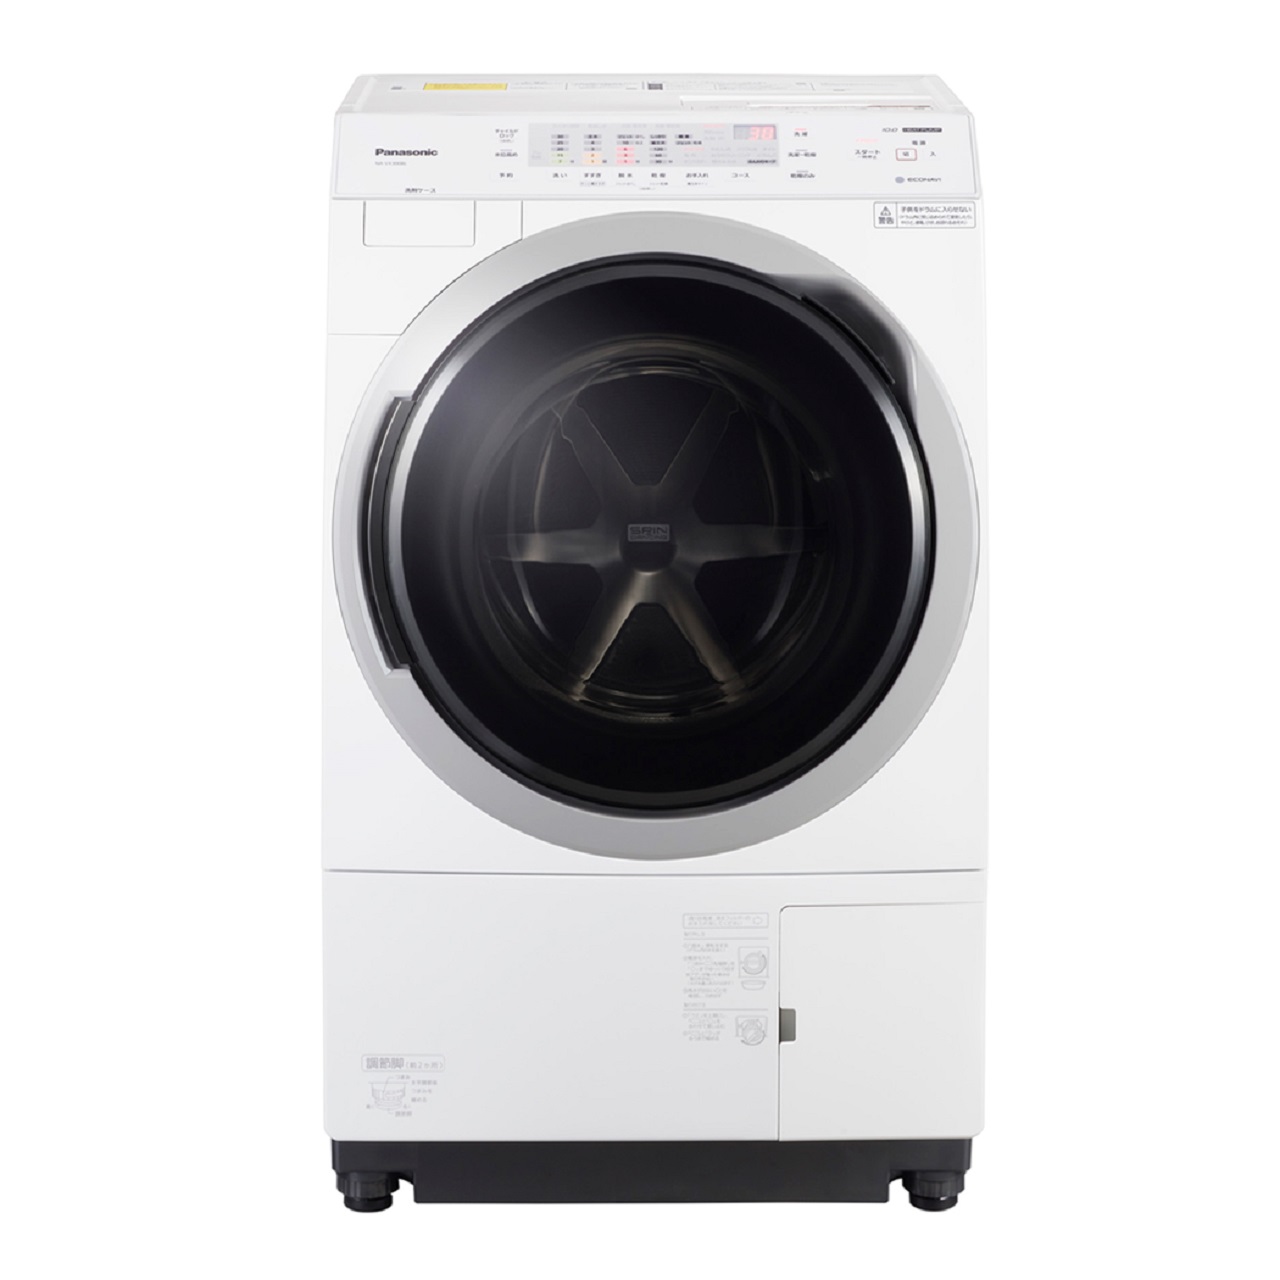 パナソニックNA-VX300Bななめドラム洗濯乾燥機